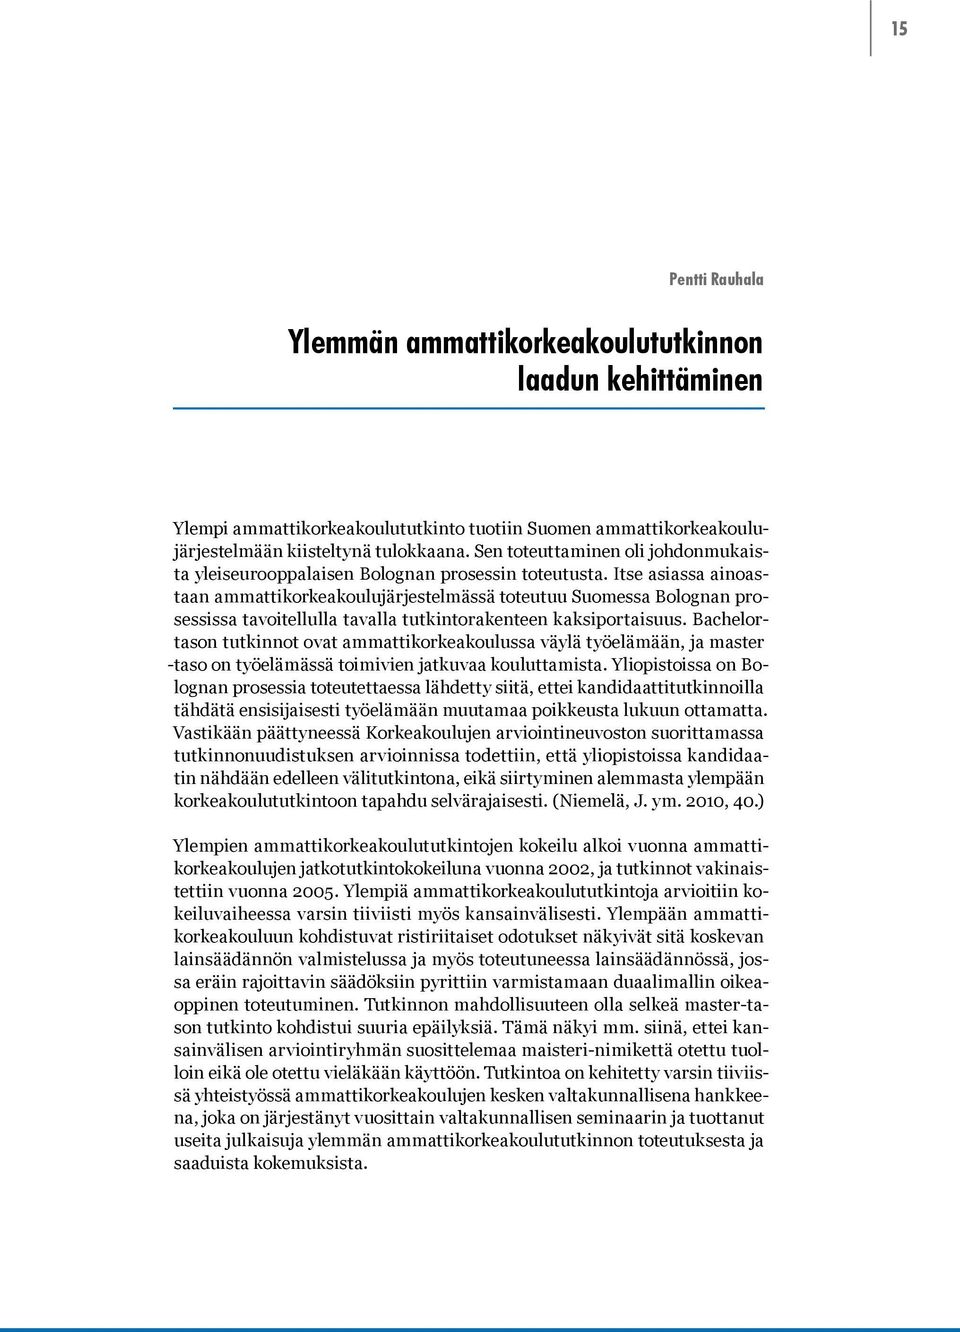 Itse asiassa ainoastaan ammattikorkeakoulujärjestelmässä toteutuu Suomessa Bolognan prosessissa tavoitellulla tavalla tutkintorakenteen kaksiportaisuus.